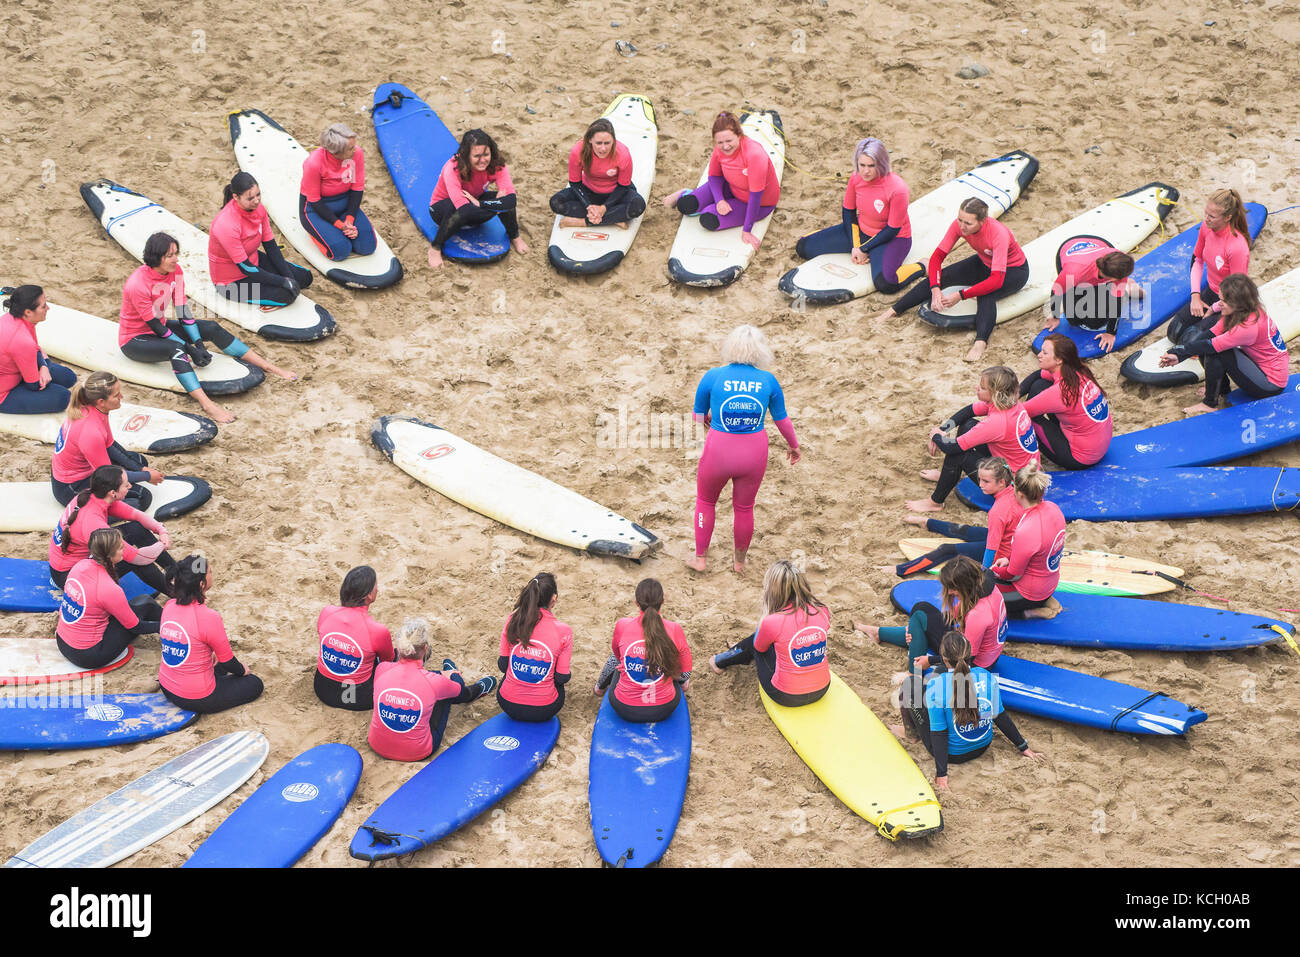 Les débutants pour assister à une leçon de surf - Surf Betty's Festival un festival tenu à Newquay de contribuer à l'autonomisation des femmes par le surf et la remise en forme. Cornwall. Banque D'Images